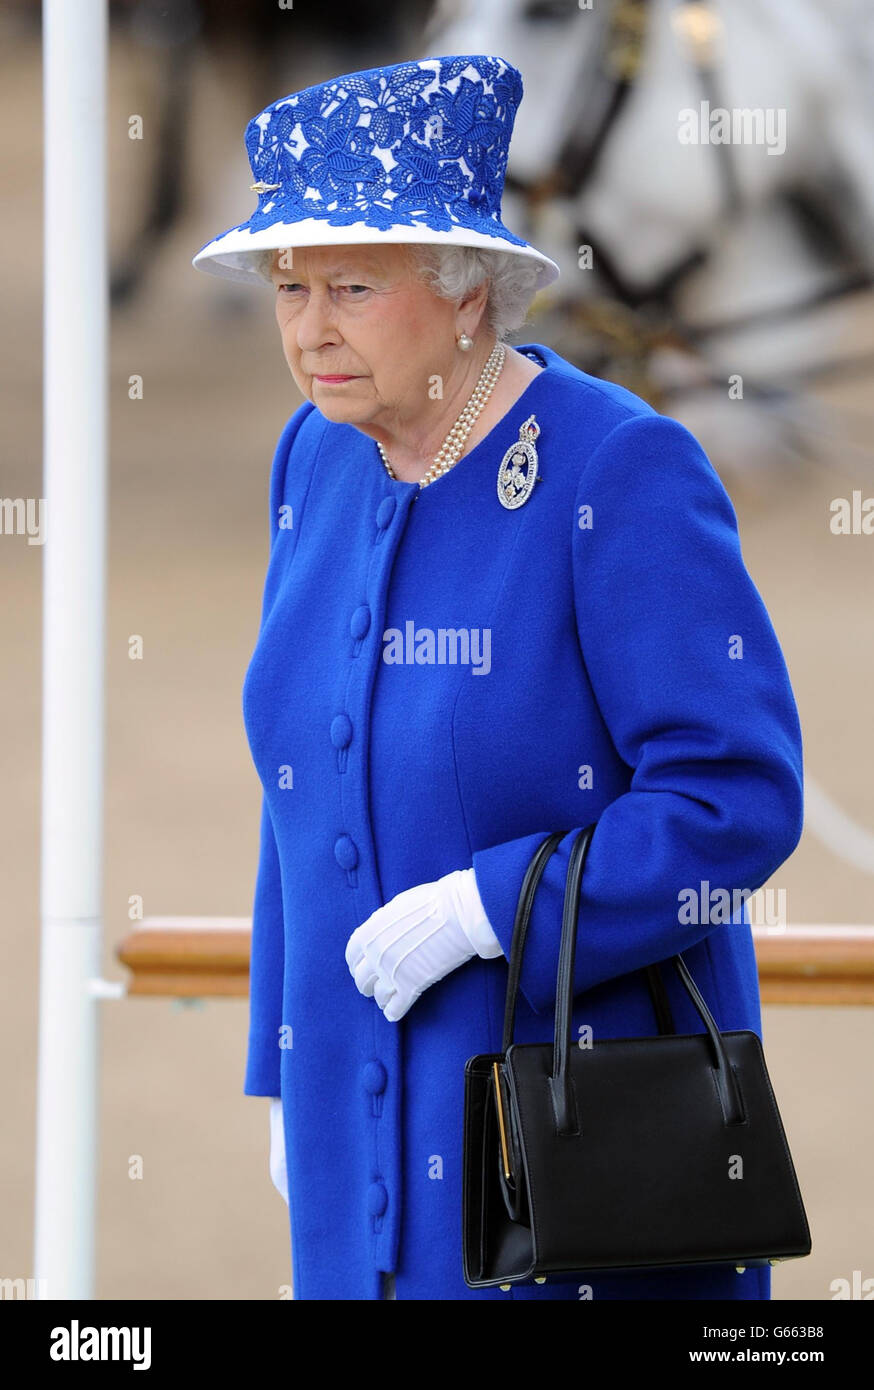 La reine Elizabeth II au Horse Guards Parade, Londres, pendant le Trooping the Color. Banque D'Images